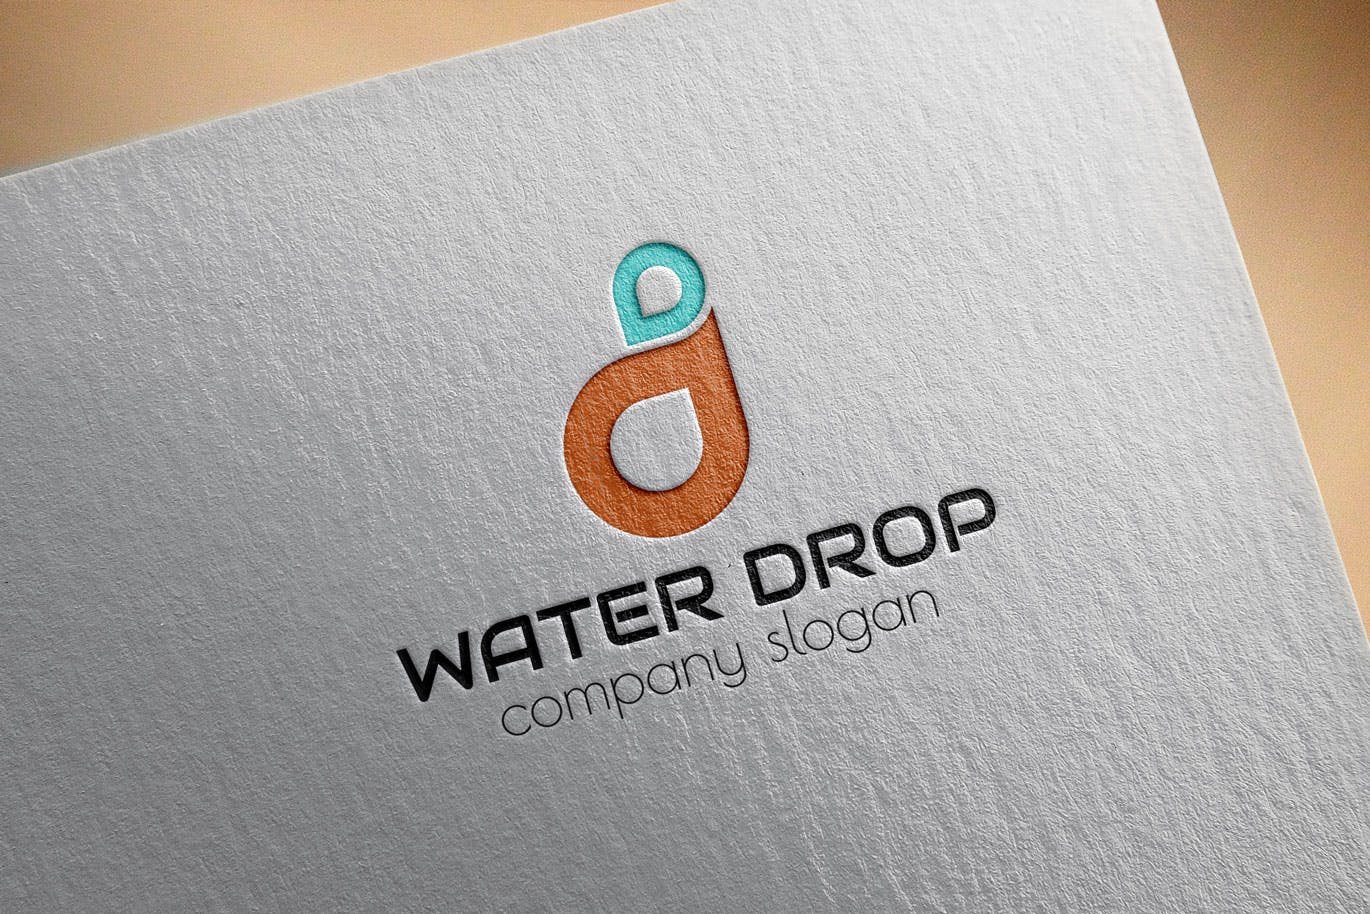 水滴几何图形创意Logo设计素材库精选模板 Water Drop Creative Logo Template插图(2)